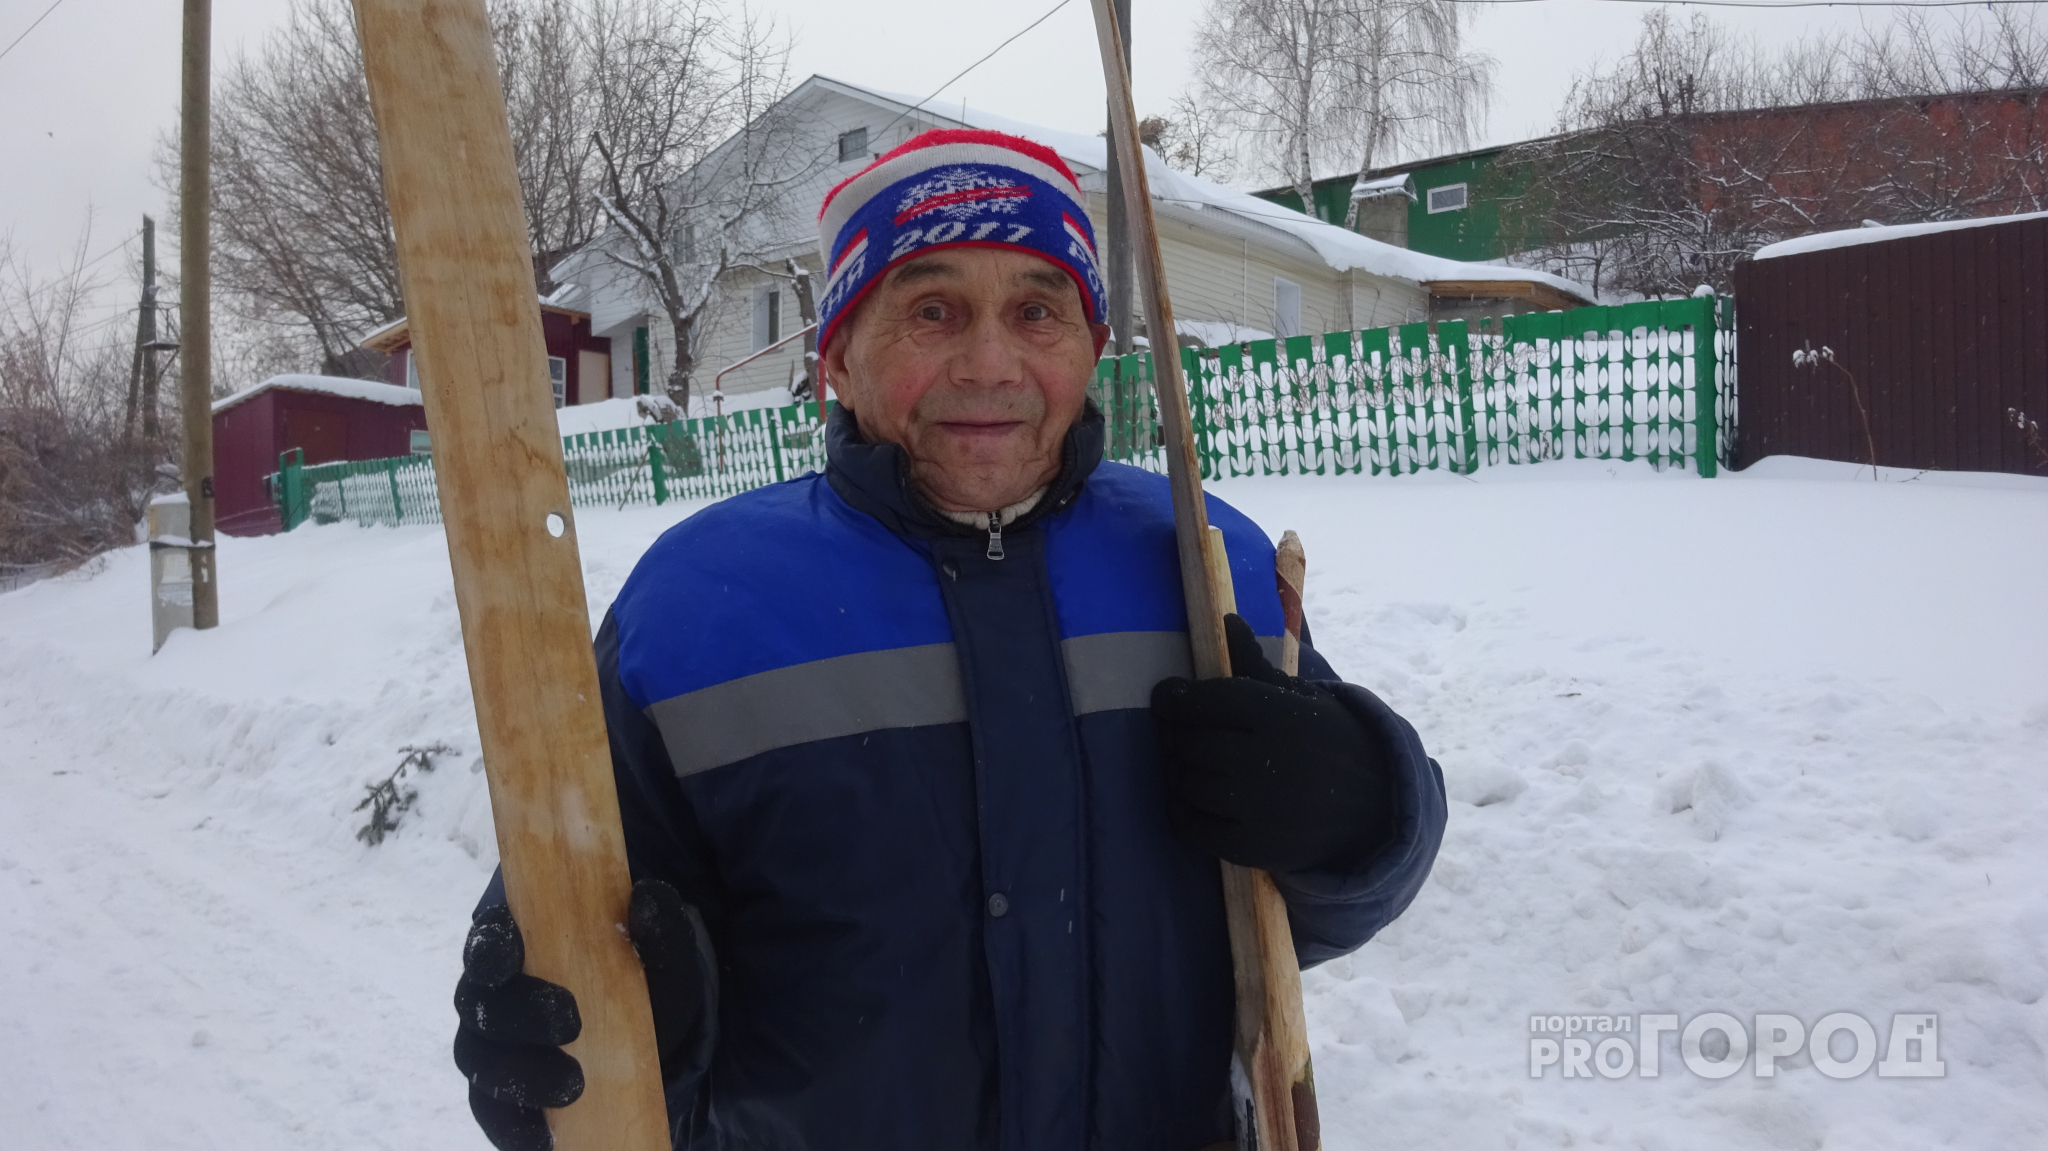 Дед из Чебоксар катается на лыжах, которые спасли его дядю на войне